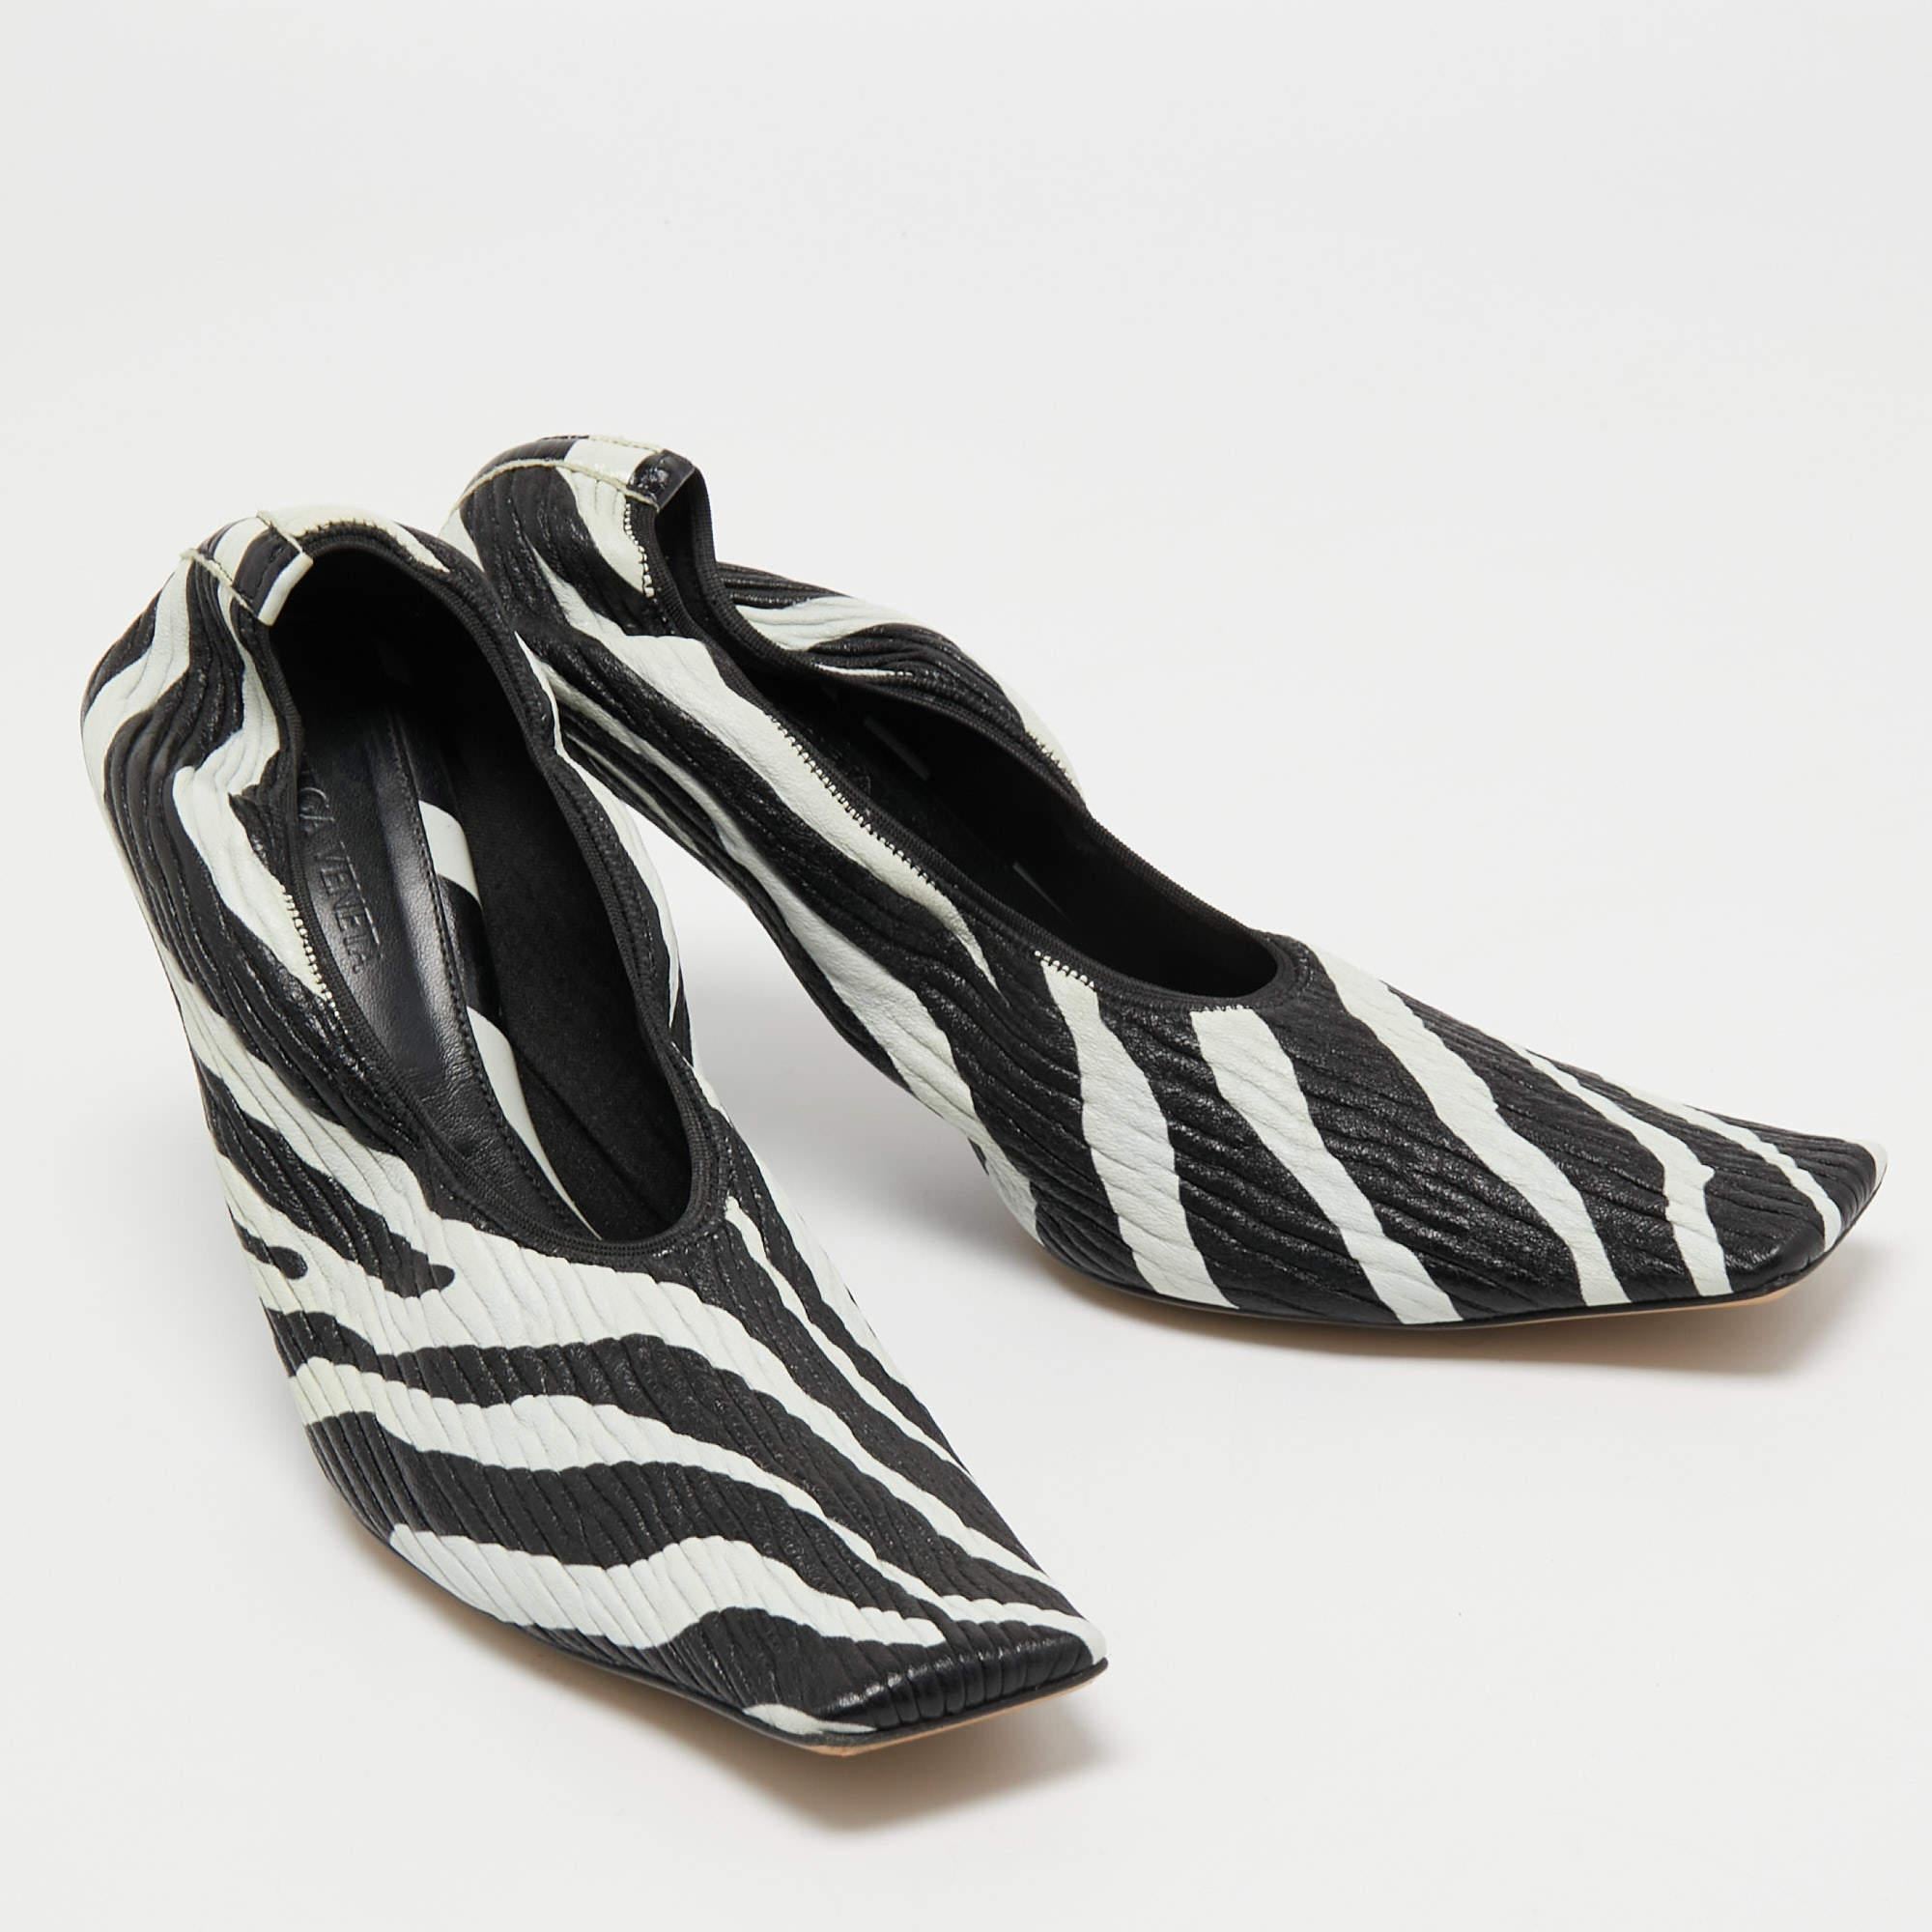 Bottega Veneta Black/White Zebra Print Leather Pumps Size 39 4